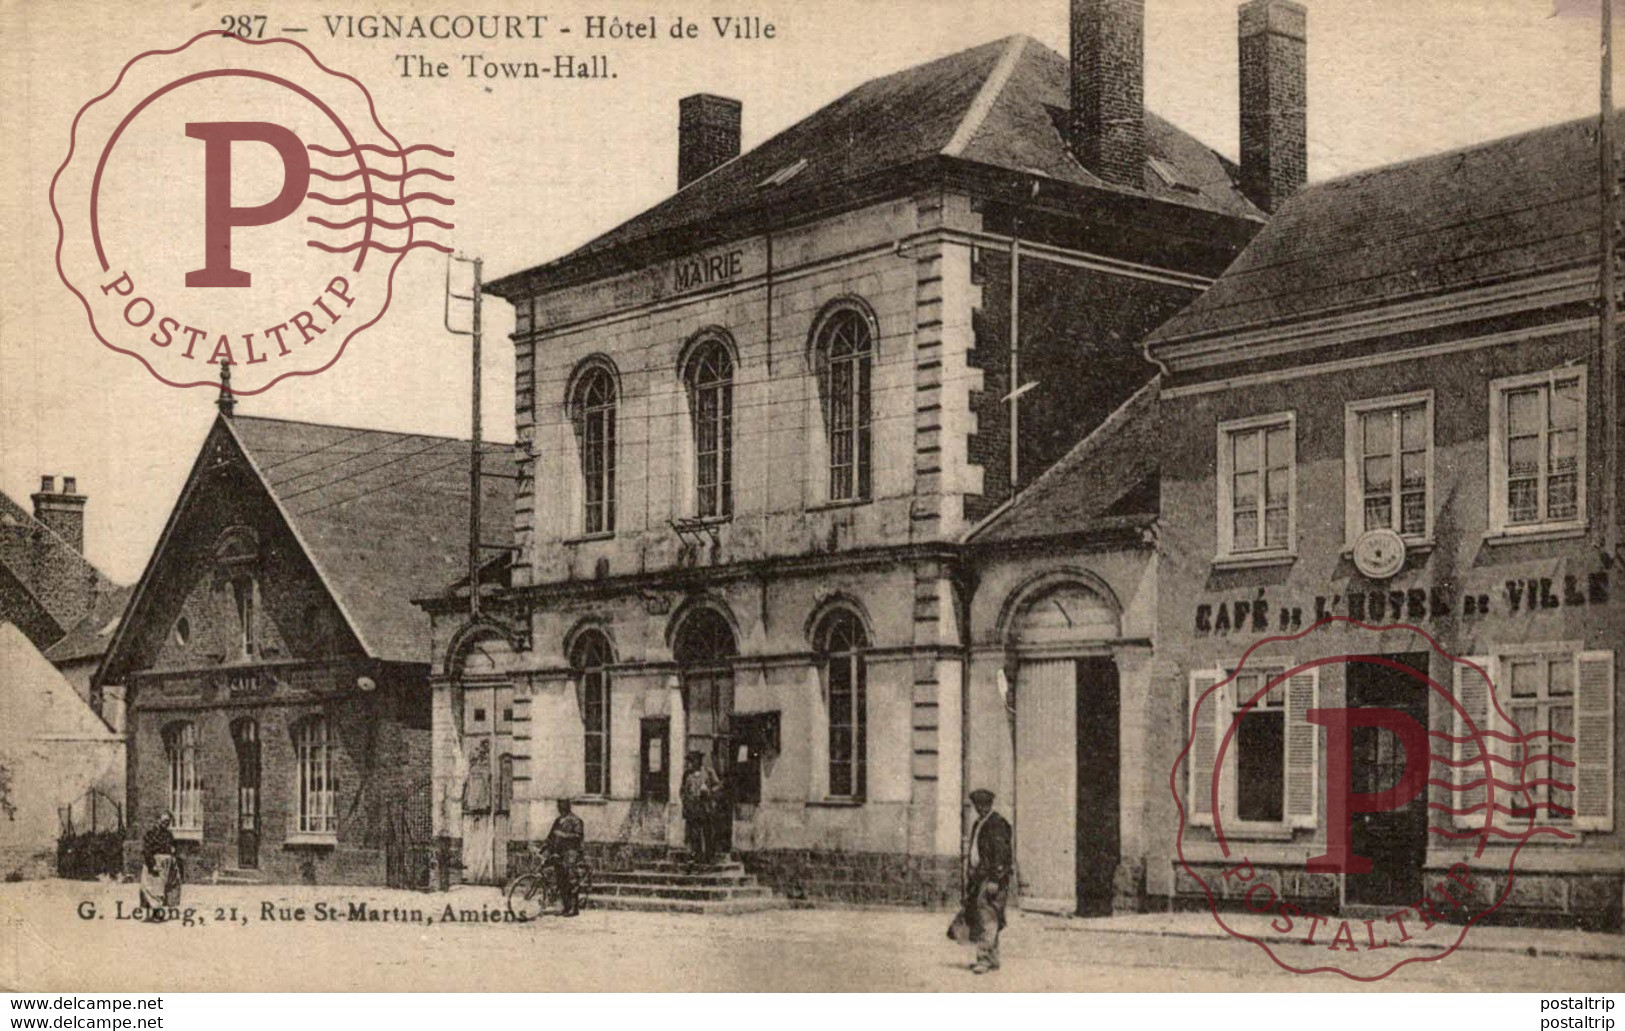 VIGNACOURT, HOTEL DE VILLE - Somme 80 - Animée - Edit. G. Lelong à Amiens - Vignacourt